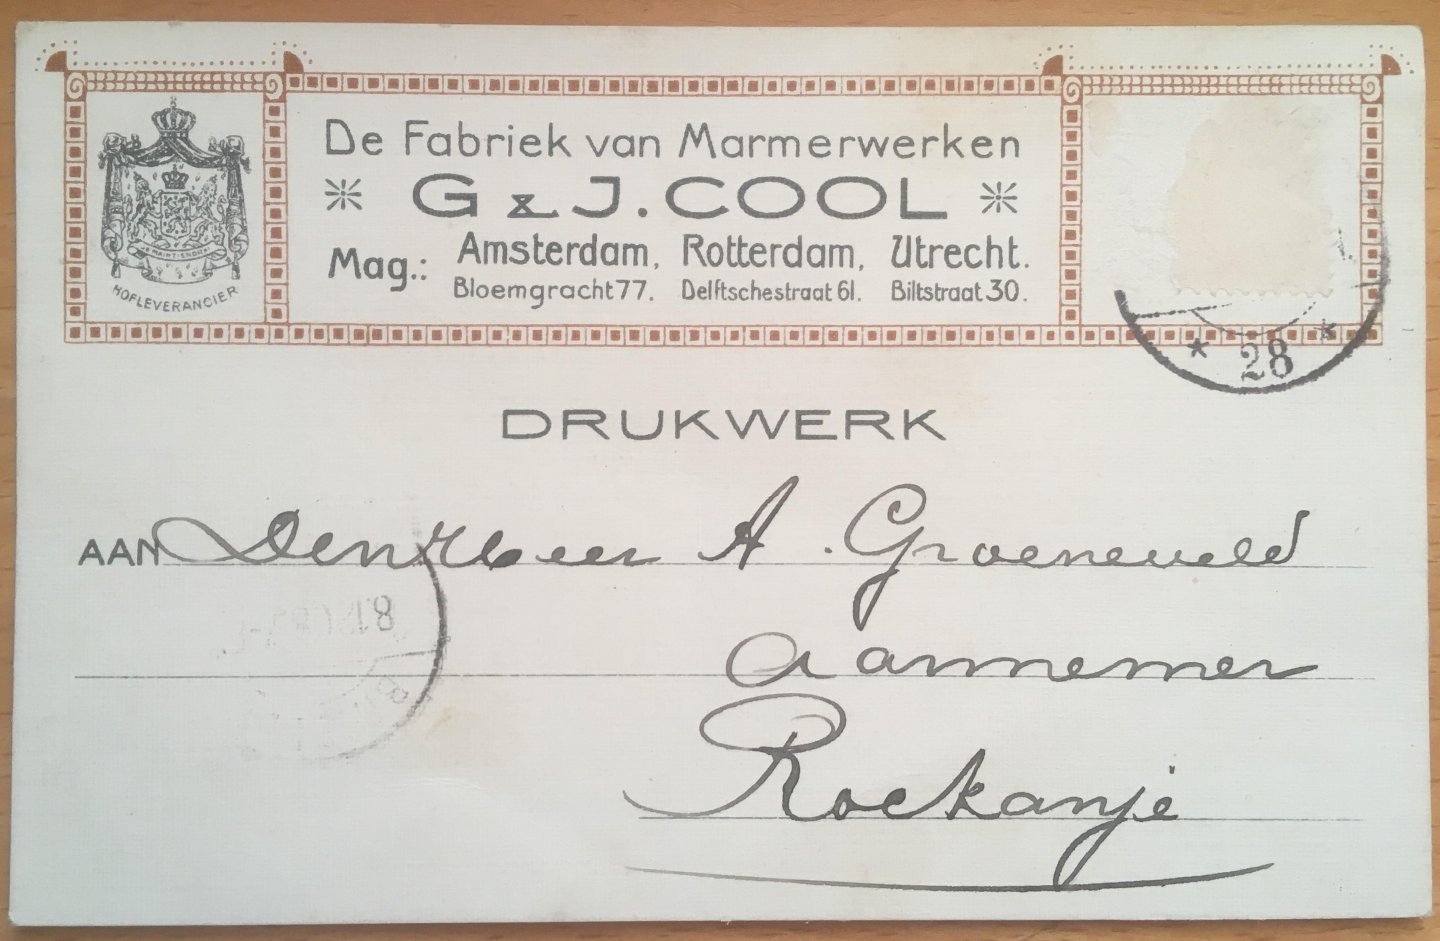 G. en J. Cool - Reclamekaart van de fabriek van Marmerwerken G. en J. Cool (1908)